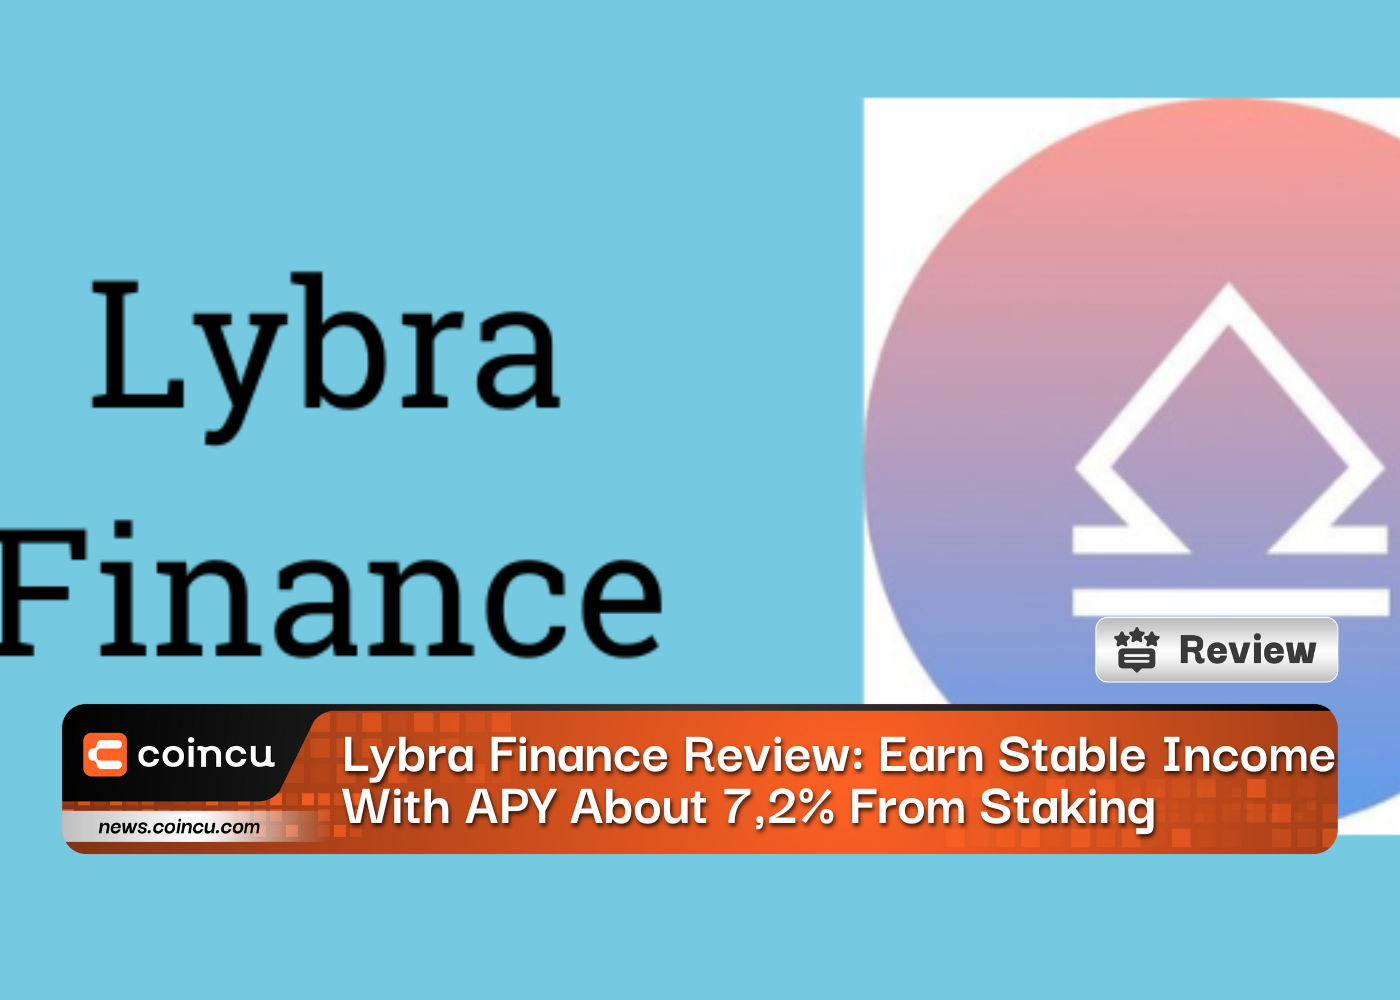 Lybra Finance Review: Kiếm thu nhập ổn định với APY Khoảng 7,2% từ việc đặt cược